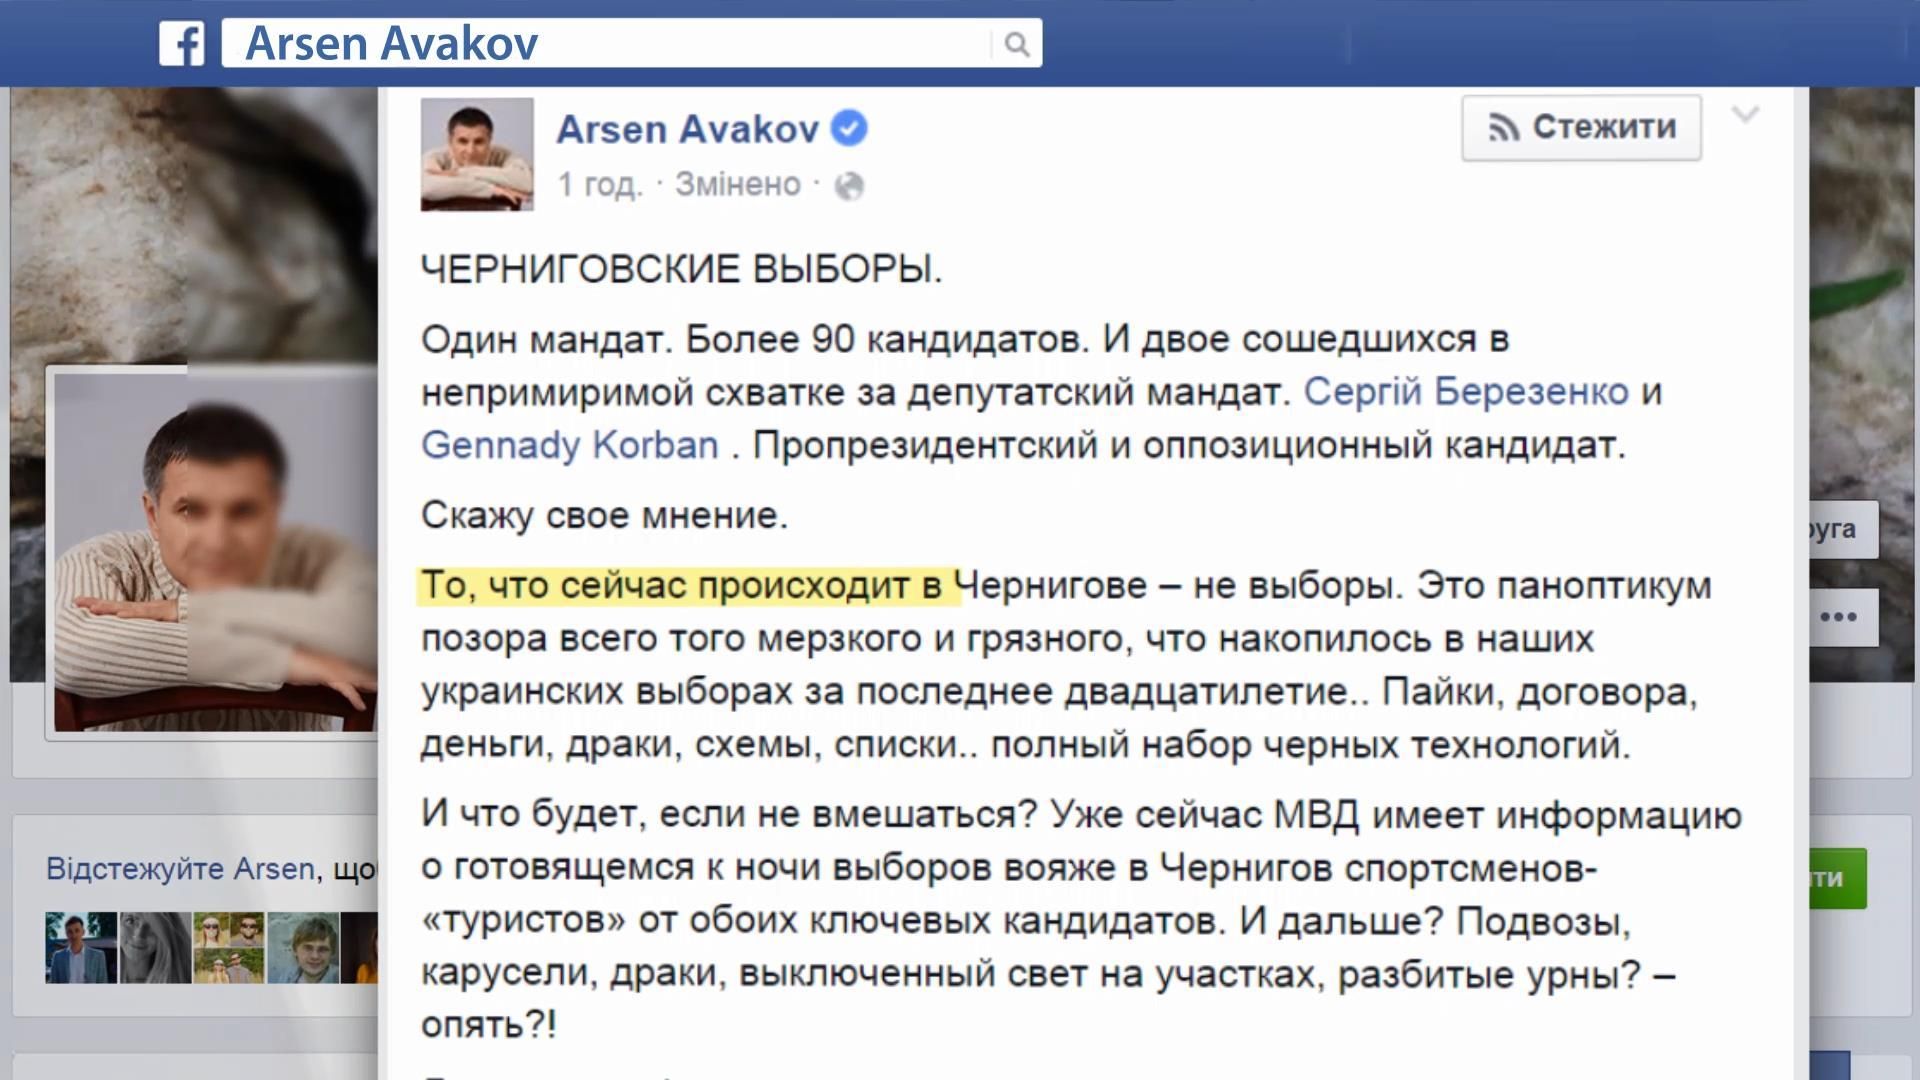 Аваков отправляет спецгруппу на выборы в Чернигове